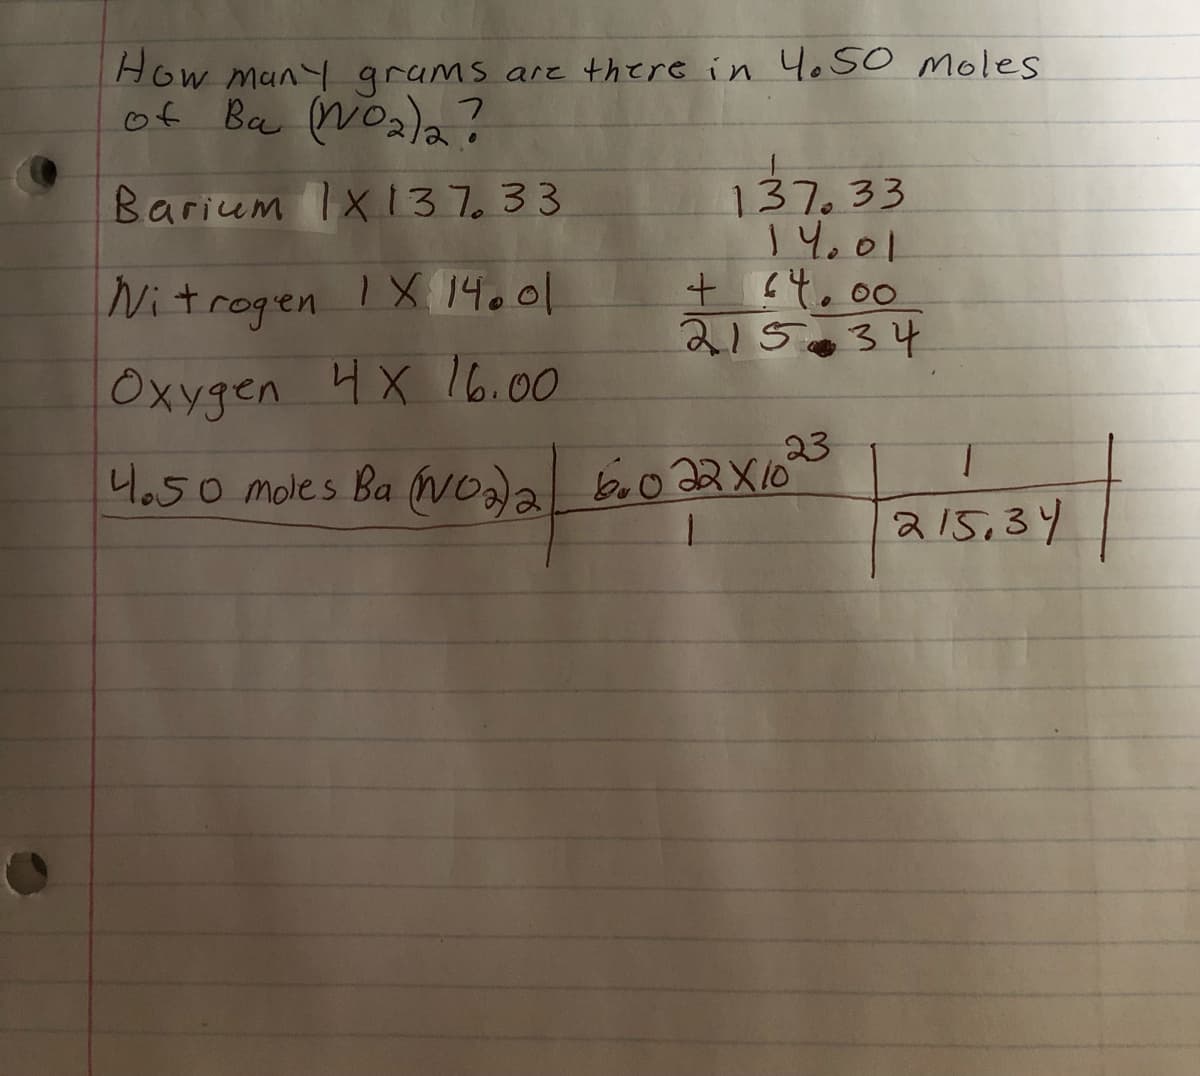 How many grams are there in 4.50 moles
of Ba (NO₂)2 ?
Barium 1x137.33
Nitrogen IX 14.01
Oxygen 4X 16.00
137.33
14.01
+ 64.00
21534
23
4.50 moles Ba (NO2)2 600 22X10°
1
215,34